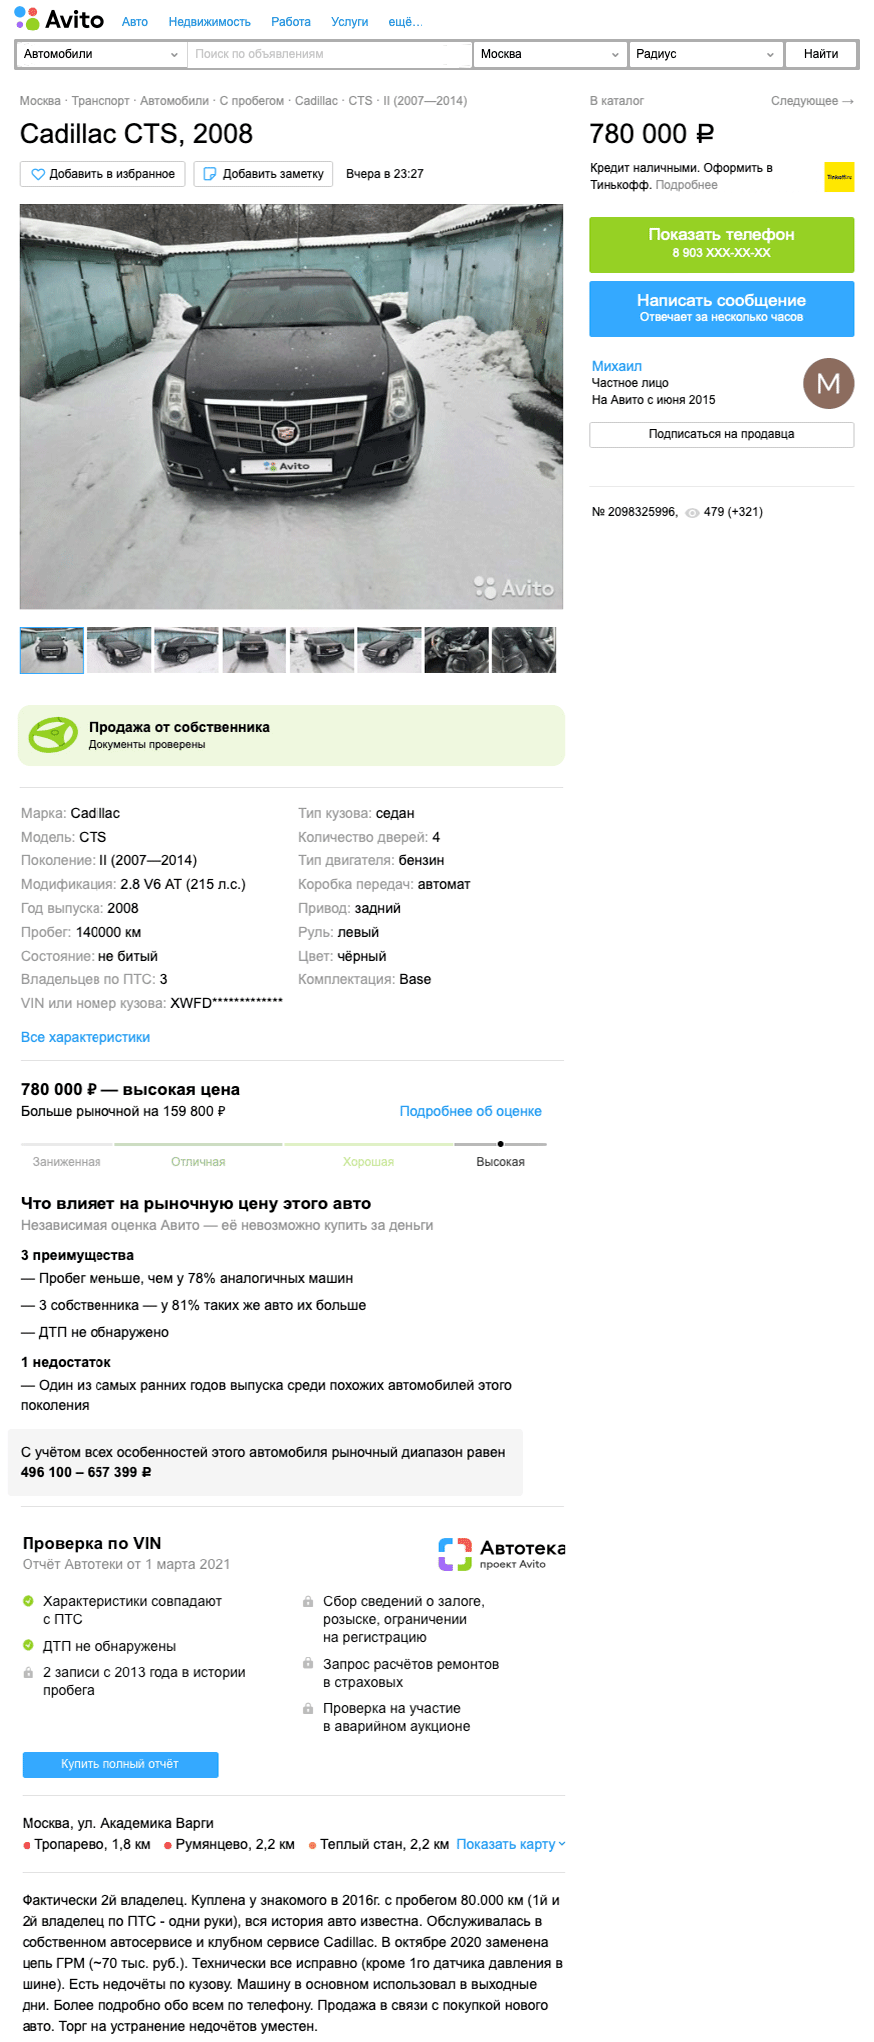 Заморские запчасти и автомат, как у УАЗ Патриот: стоит ли покупать Cadillac CTS II за 900 тысяч